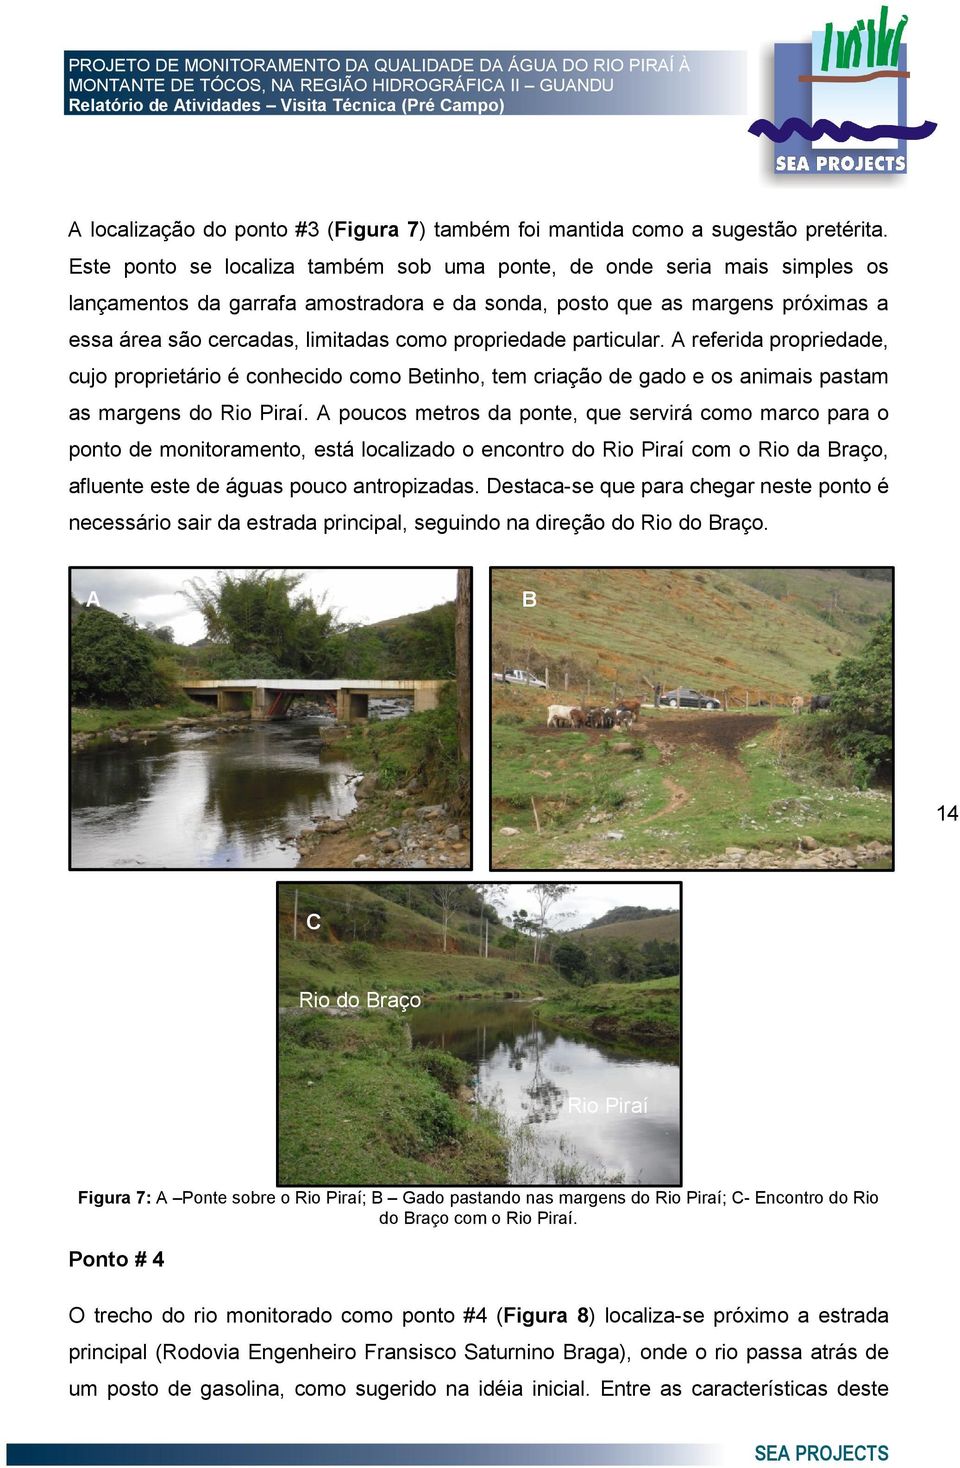 propriedade particular. A referida propriedade, cujo proprietário é conhecido como Betinho, tem criação de gado e os animais pastam as margens do Rio Piraí.